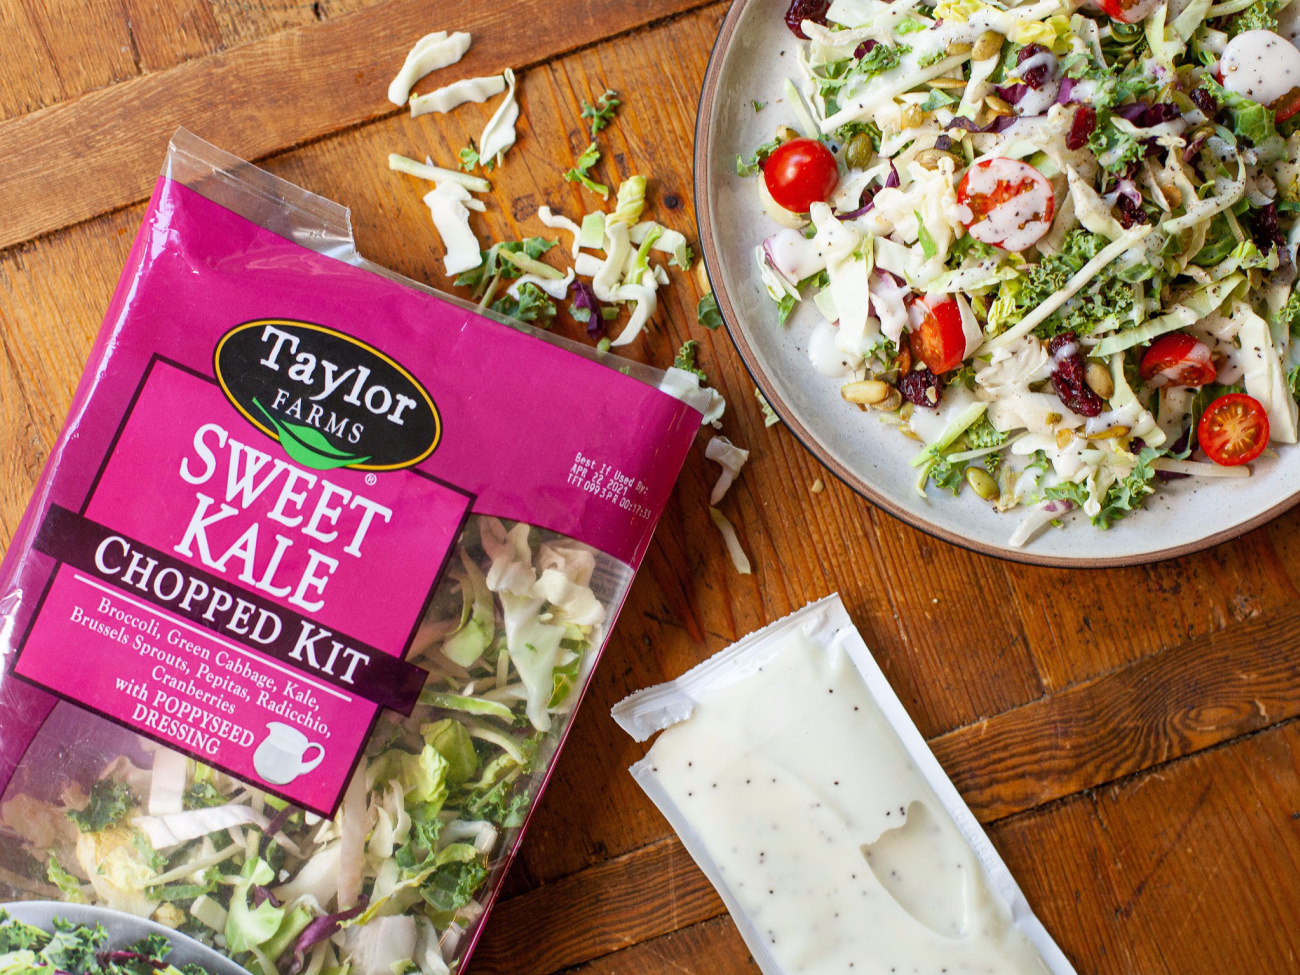 Grab Taylor Farms Chopped Salad Kits For Just $2.74 At Publix